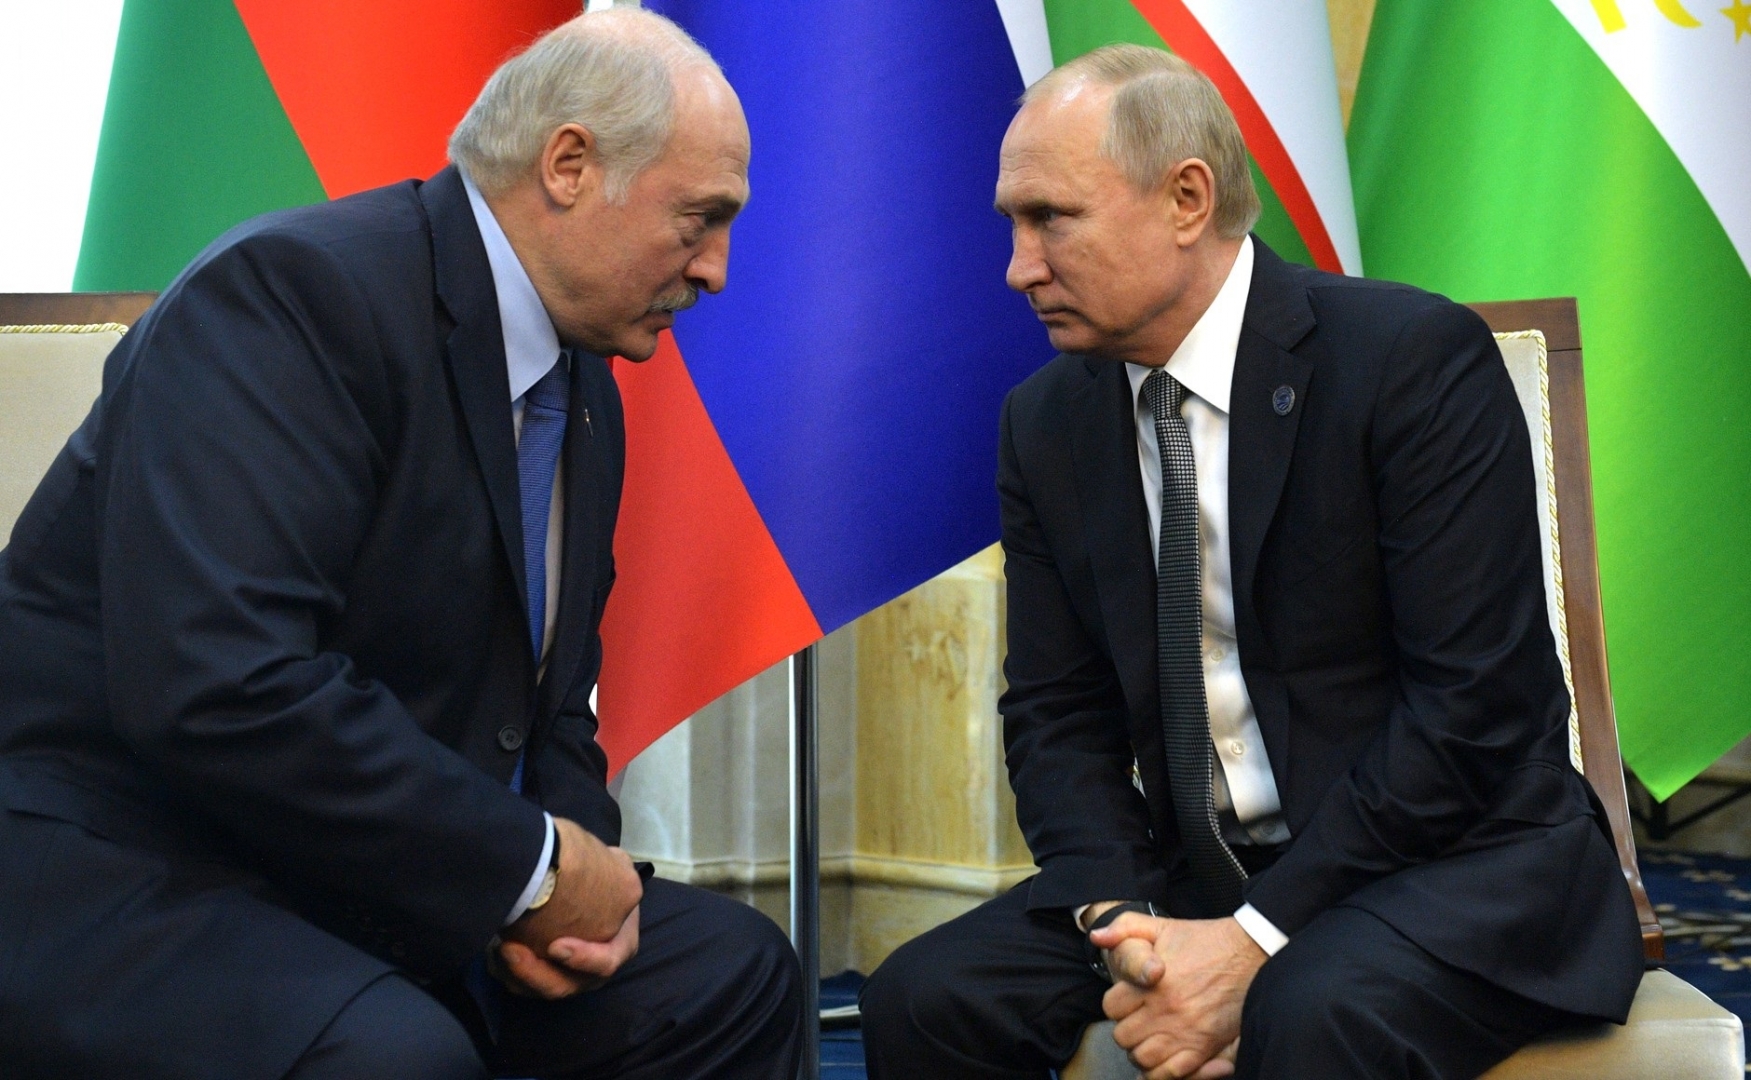 Аляксандр Мілінкевіч: Захад і Расія могуць дамовіцца і замяніць Лукашэнку